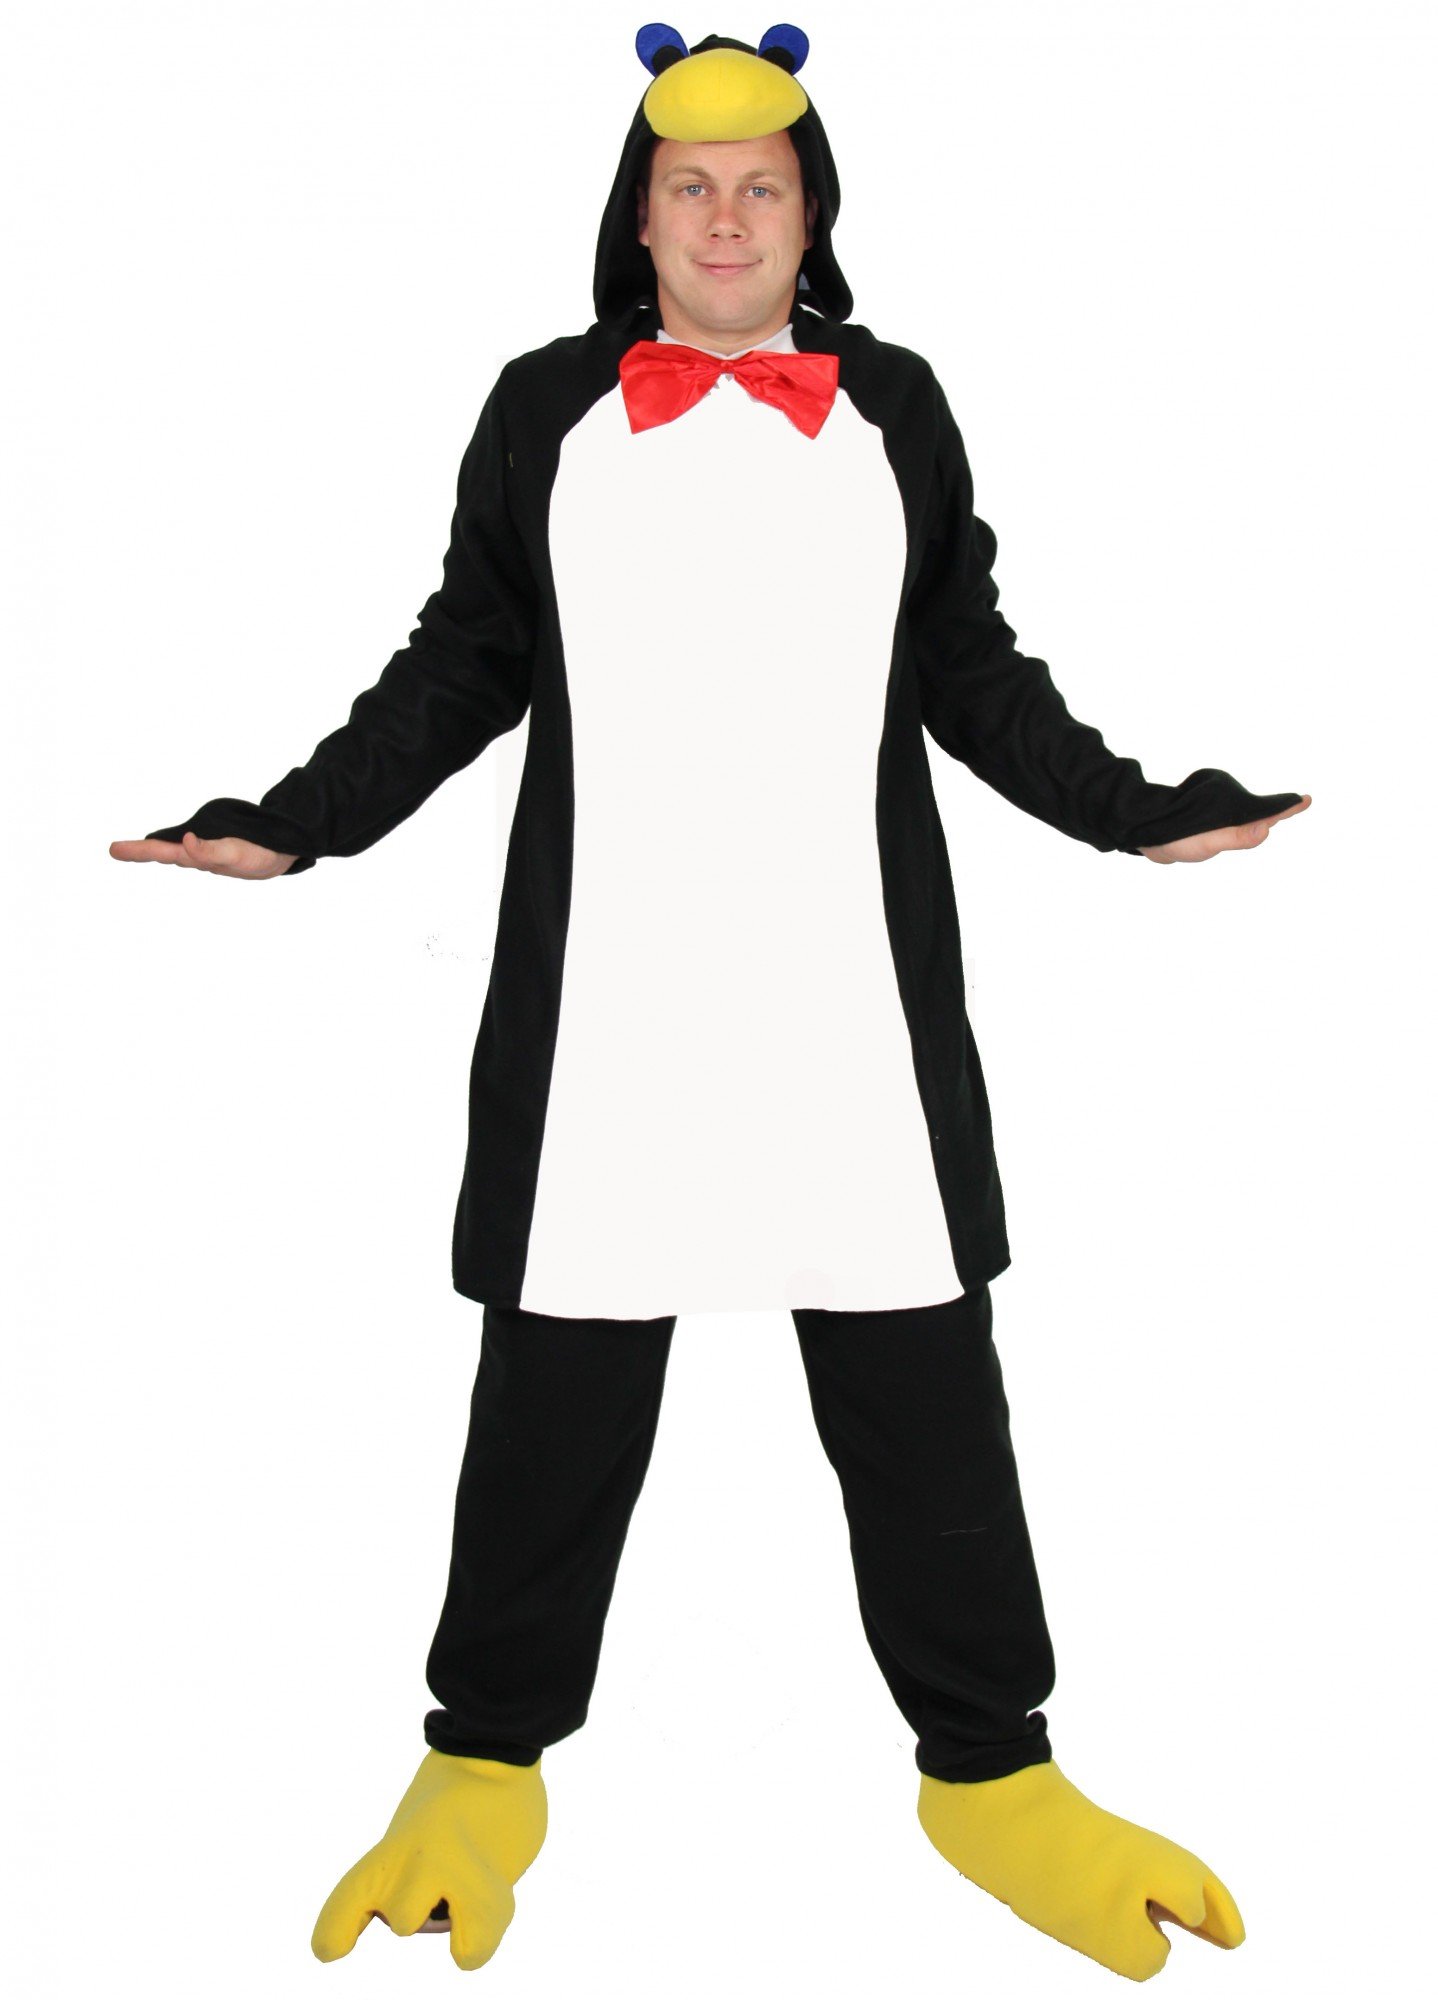 Foxxeo Pinguin Kostüm für Erwachsene - Tierkostüm Pinguinkostüm Tier schwarz weiß Fasching Karneval Damen Herren Größe S